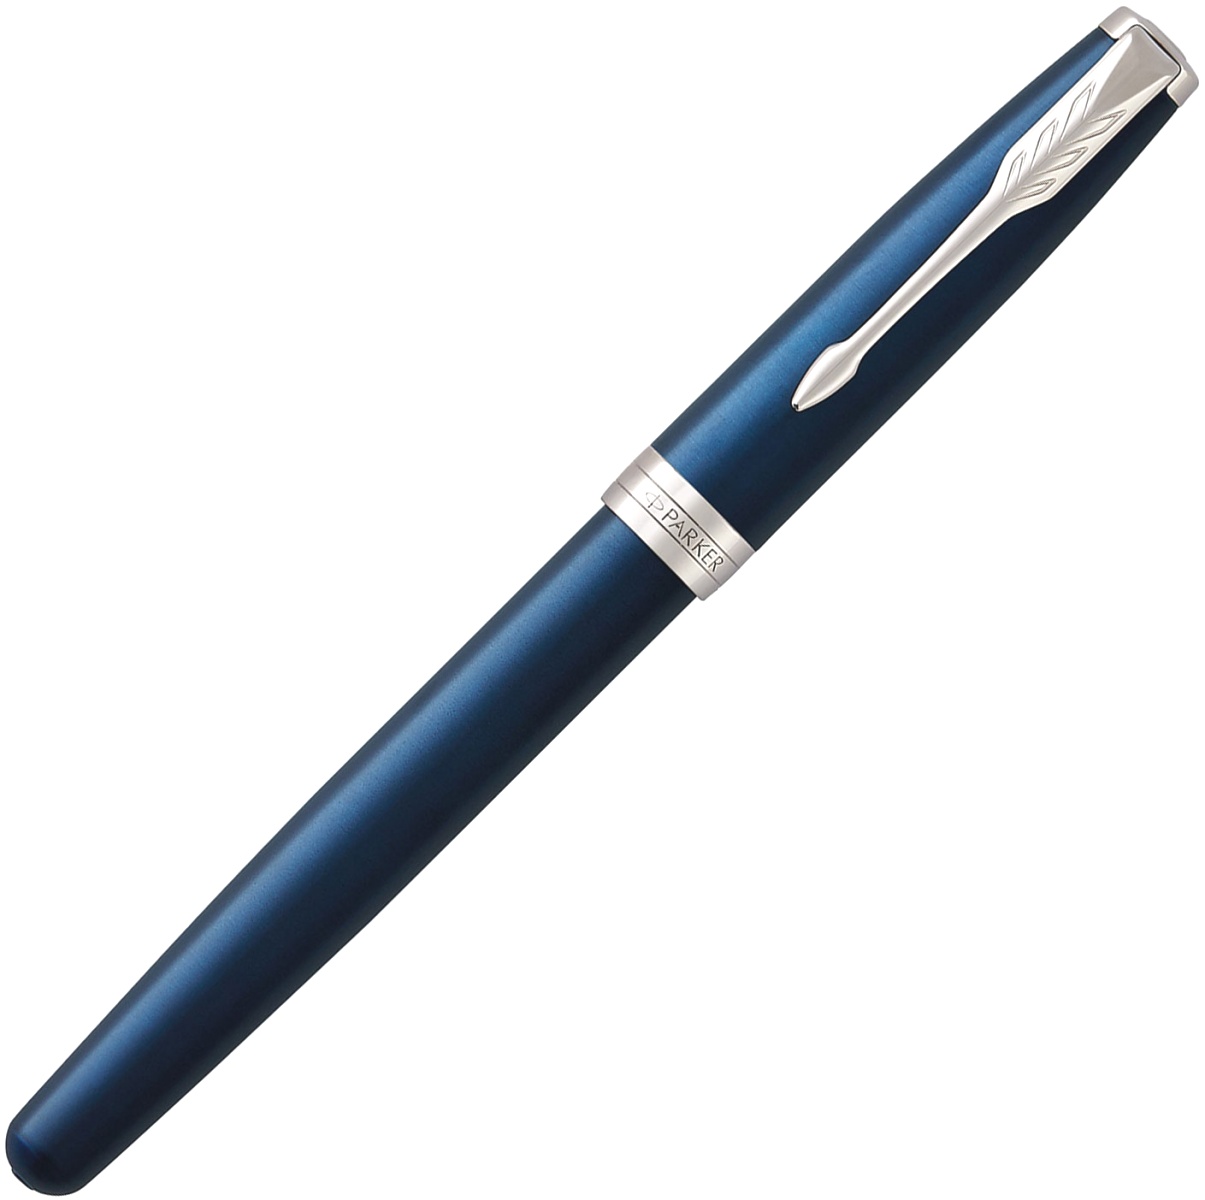  Ручка перьевая Parker Sonnet Core F539, Lacquer Blue CT (Перо F), фото 2